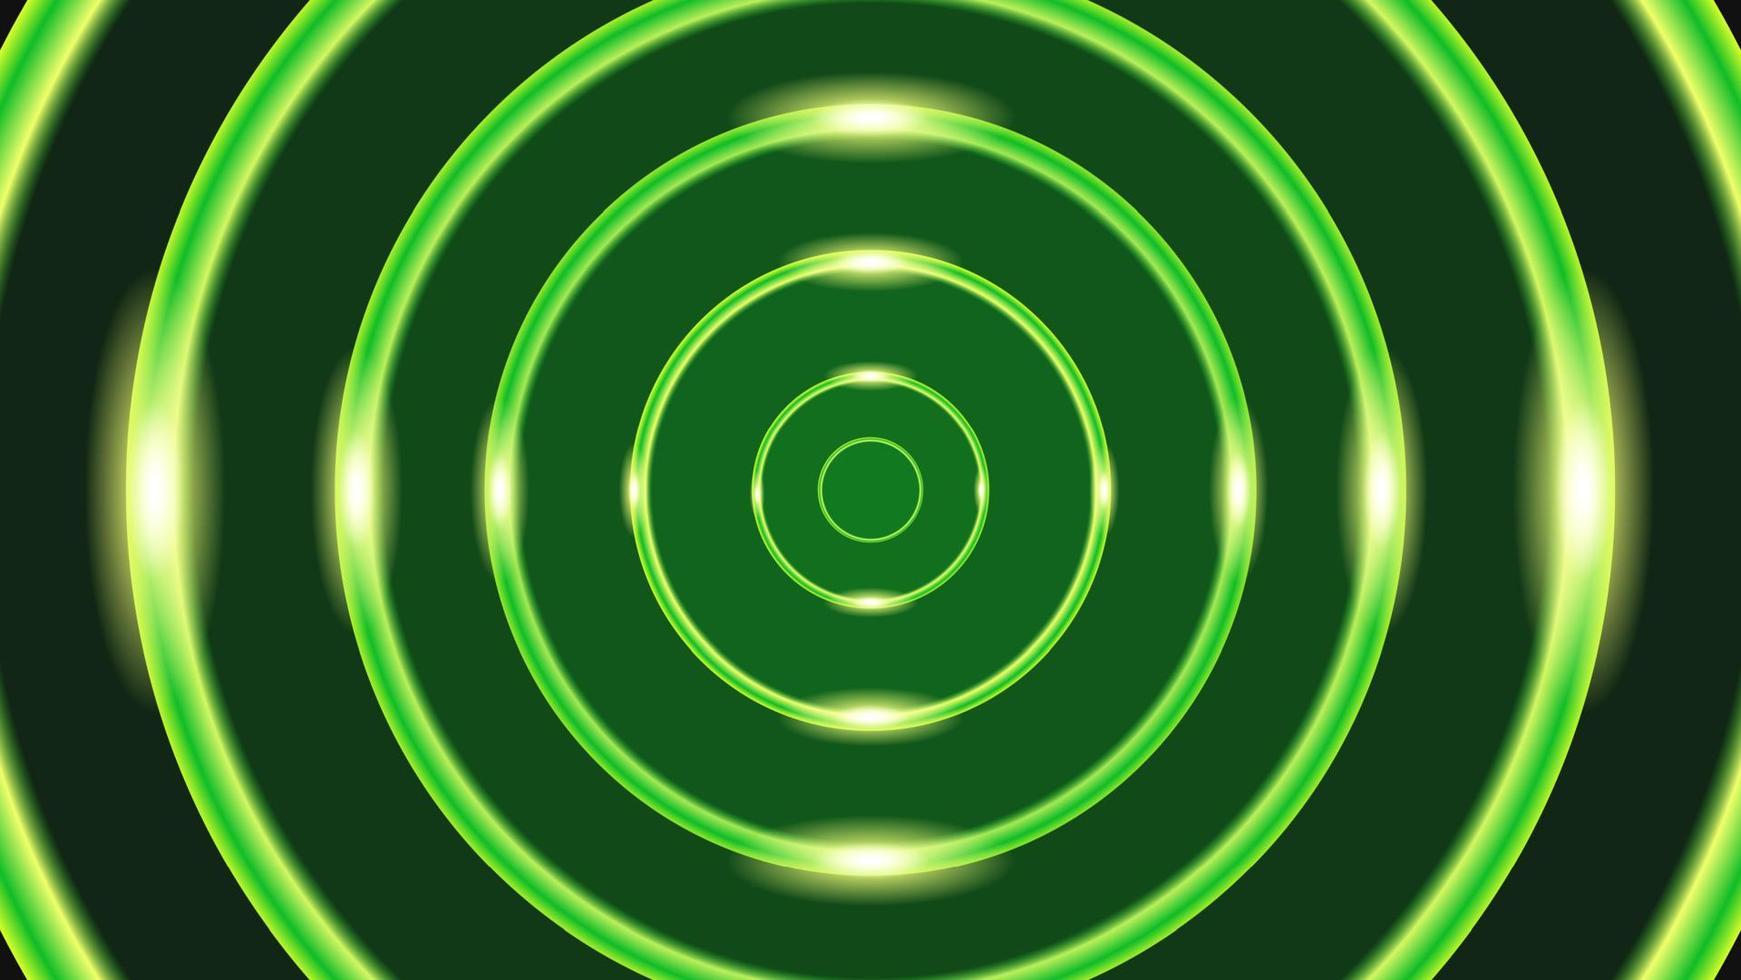 bannière de fond vert avec un cercle vert brillant de style luxueux, adaptée aux brochures, dépliants, bannières, promotions, publicités et autres vecteur